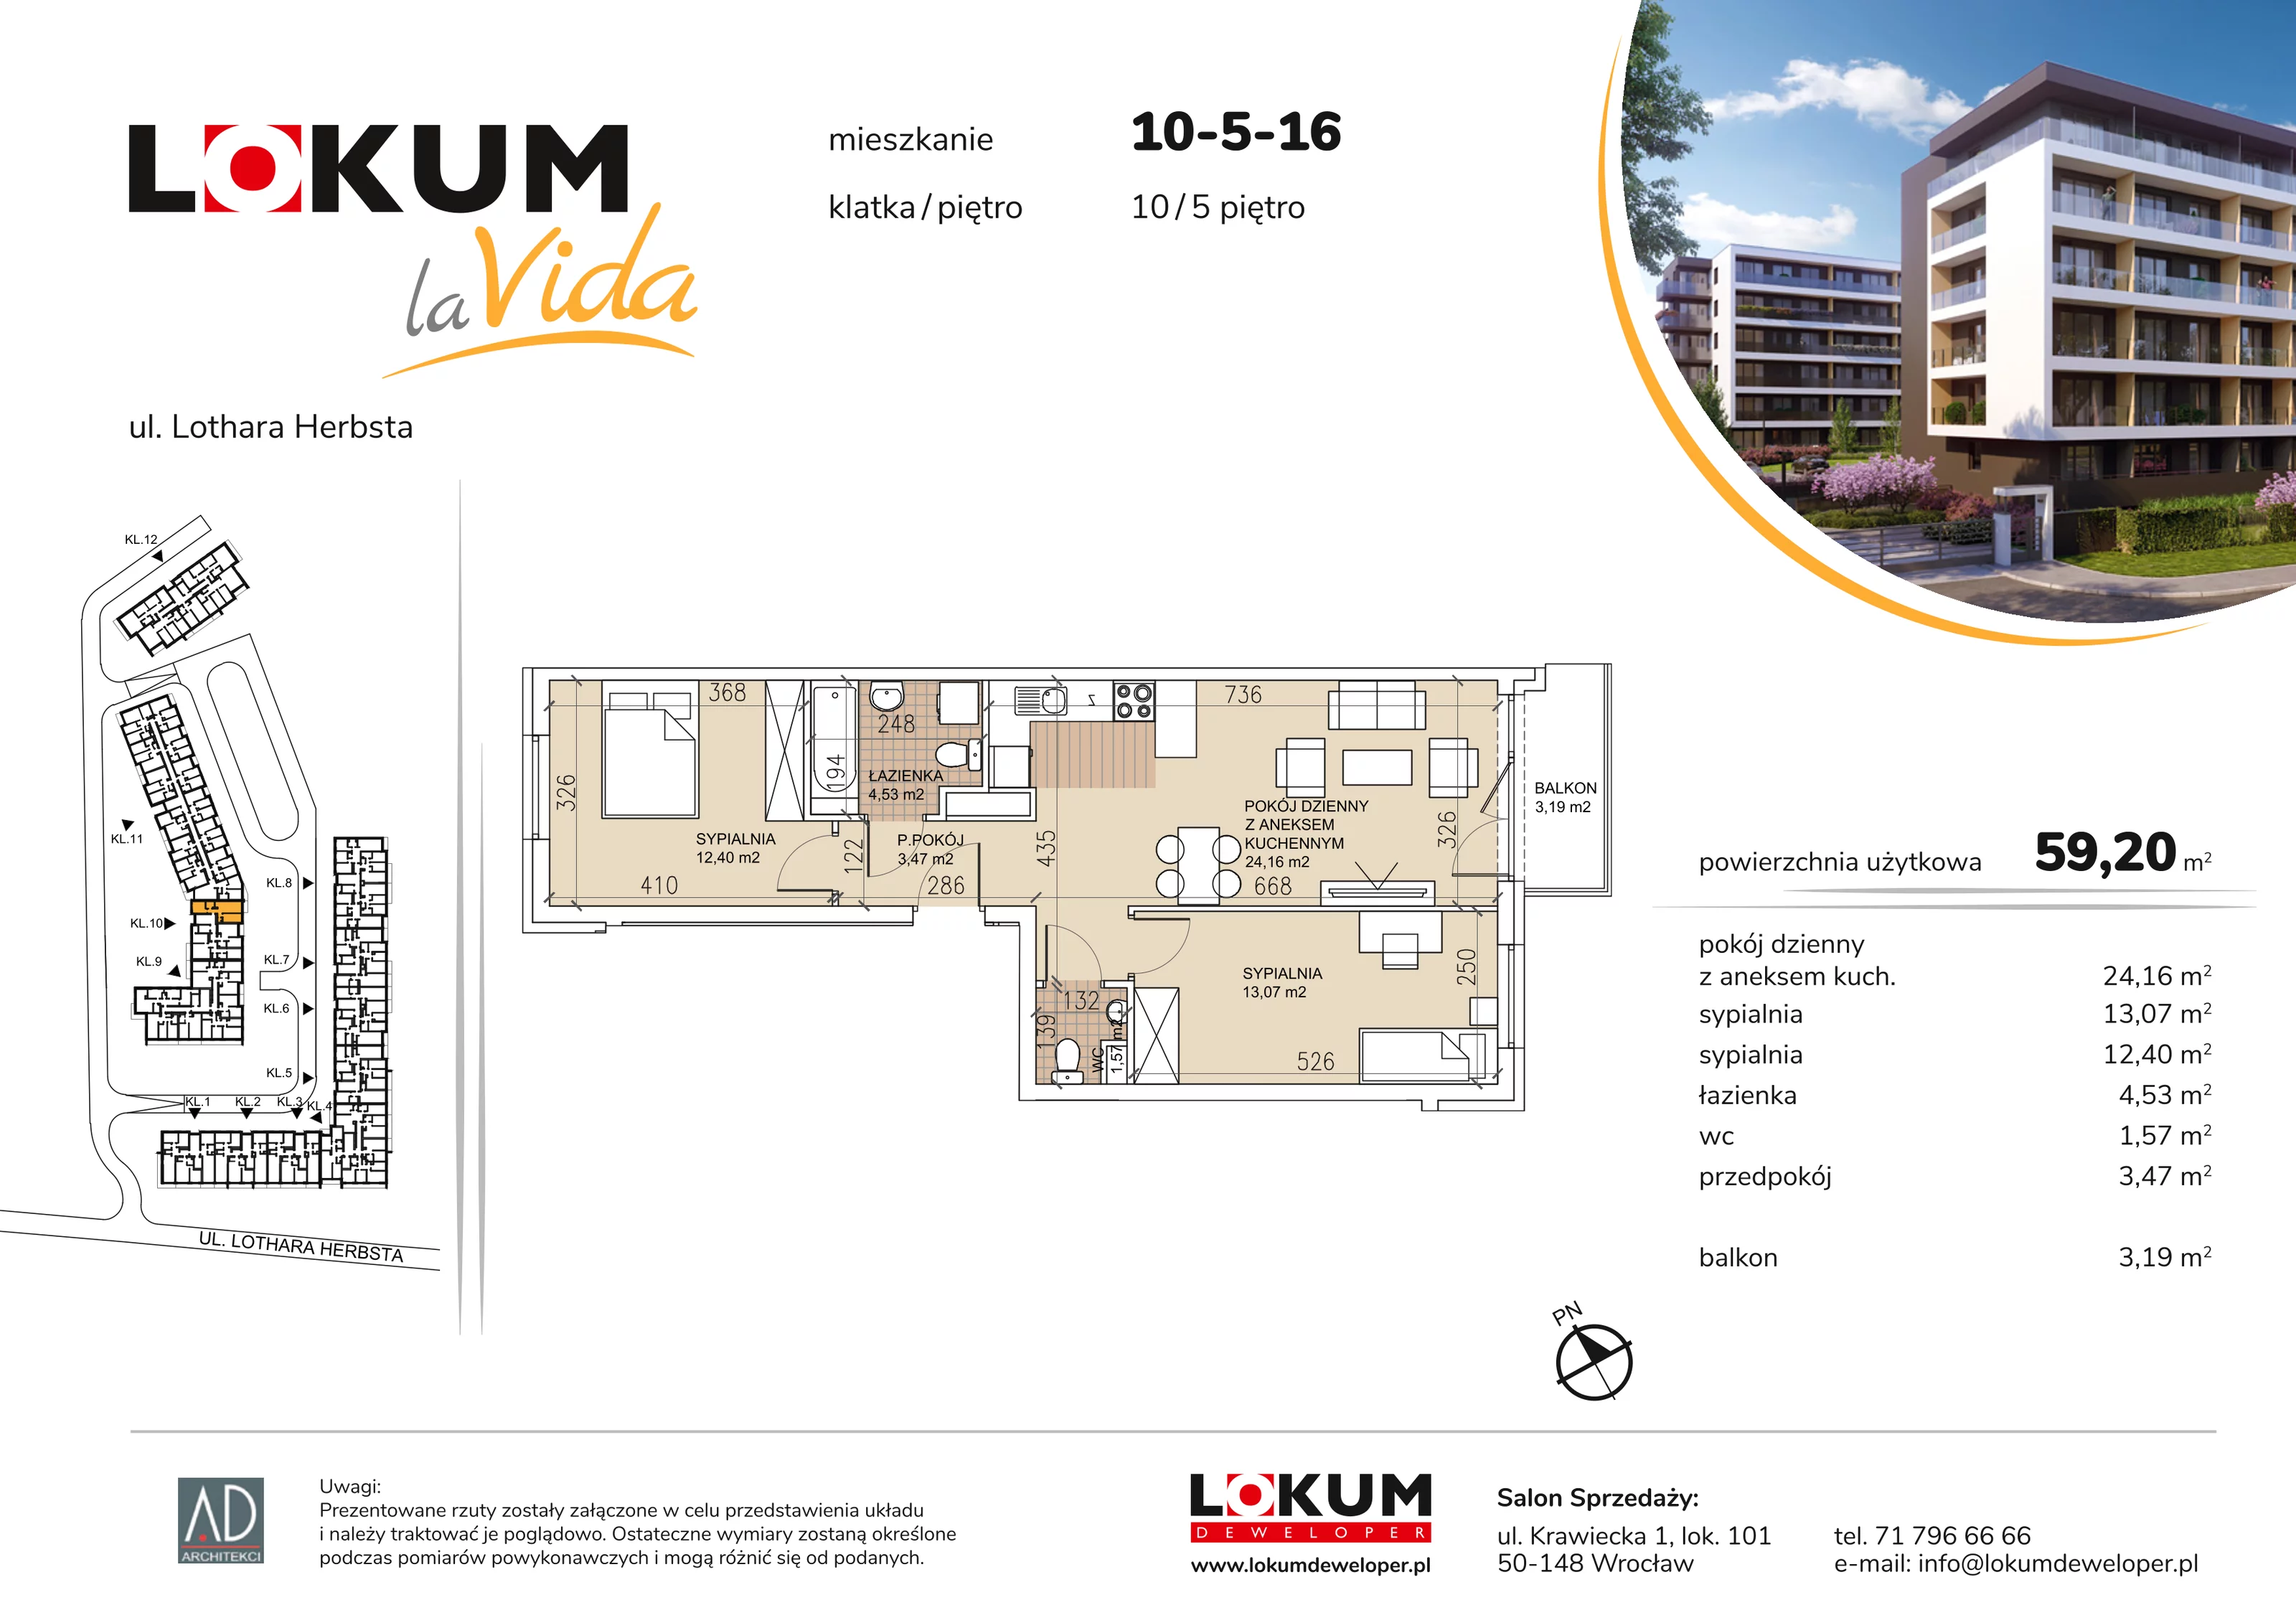 Mieszkanie 59,20 m², piętro 5, oferta nr 10-5-16, Lokum la Vida, Wrocław, Sołtysowice, ul. Lothara Herbsta